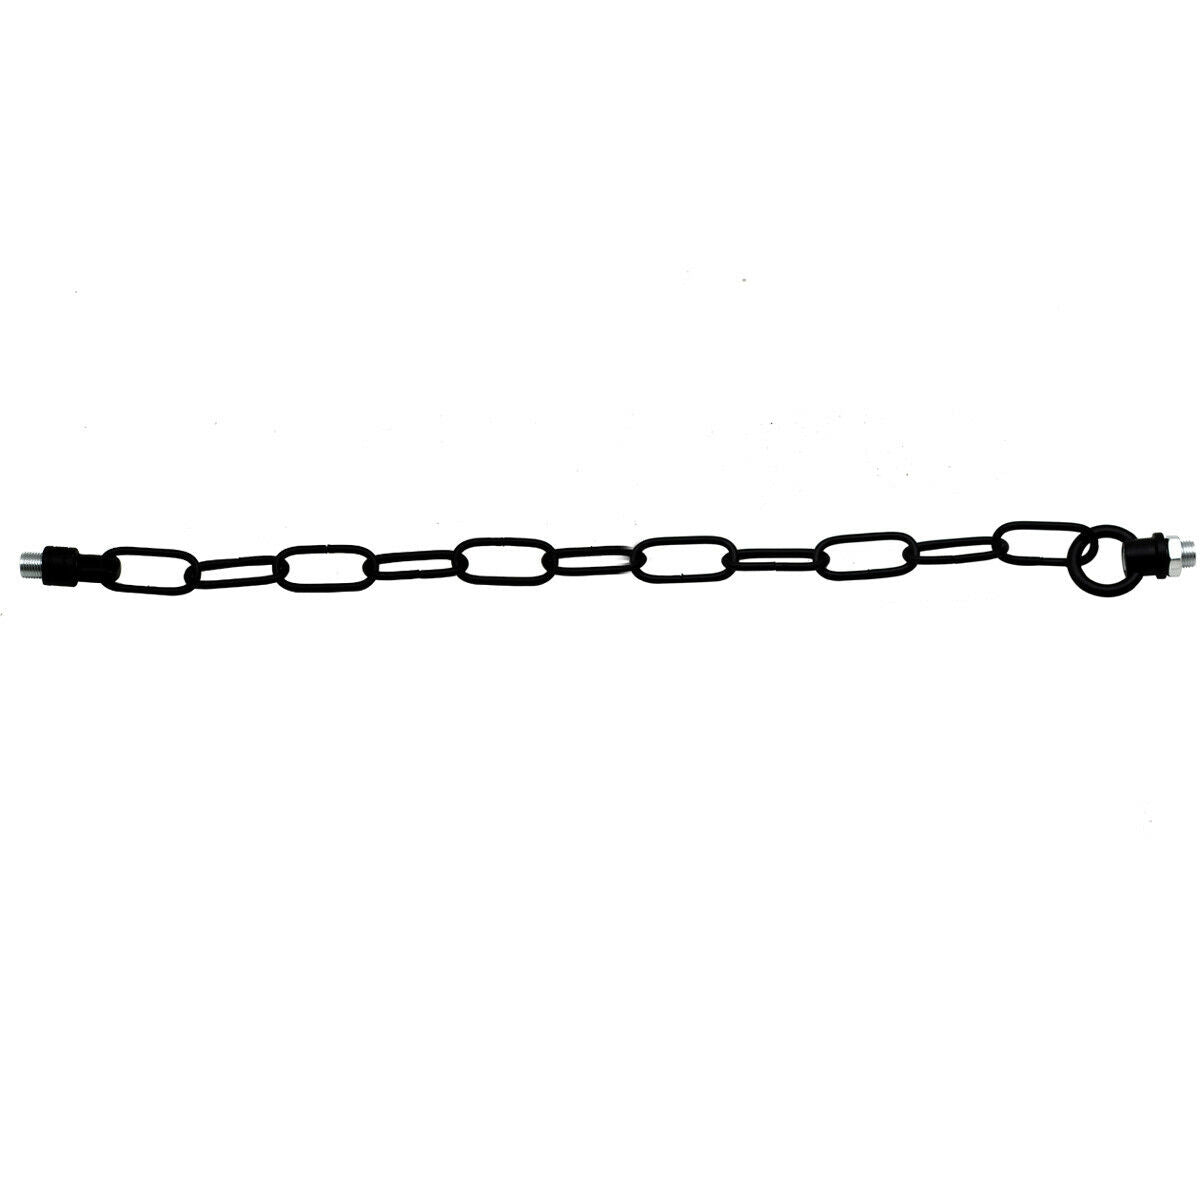 Light Chain for Ceiling Pendant lights chandeliers 38mm x 16mm - Black~1047 - LEDSone UK Ltd